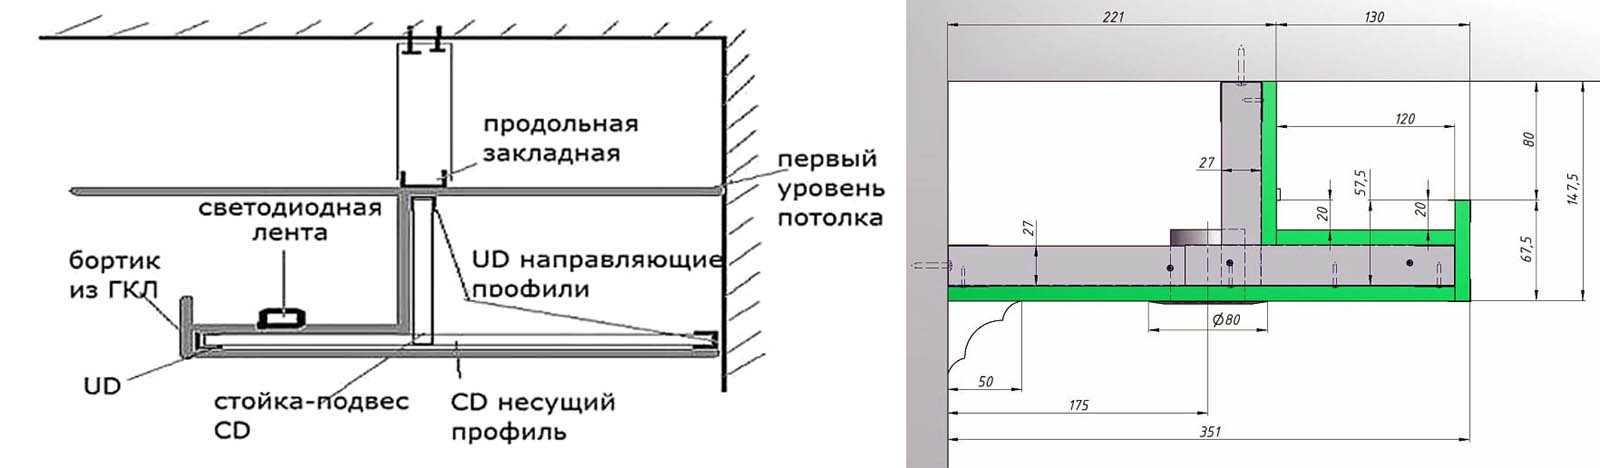 Натяжные потолки с подсветкой - фото интерьеров, обзор конструкций